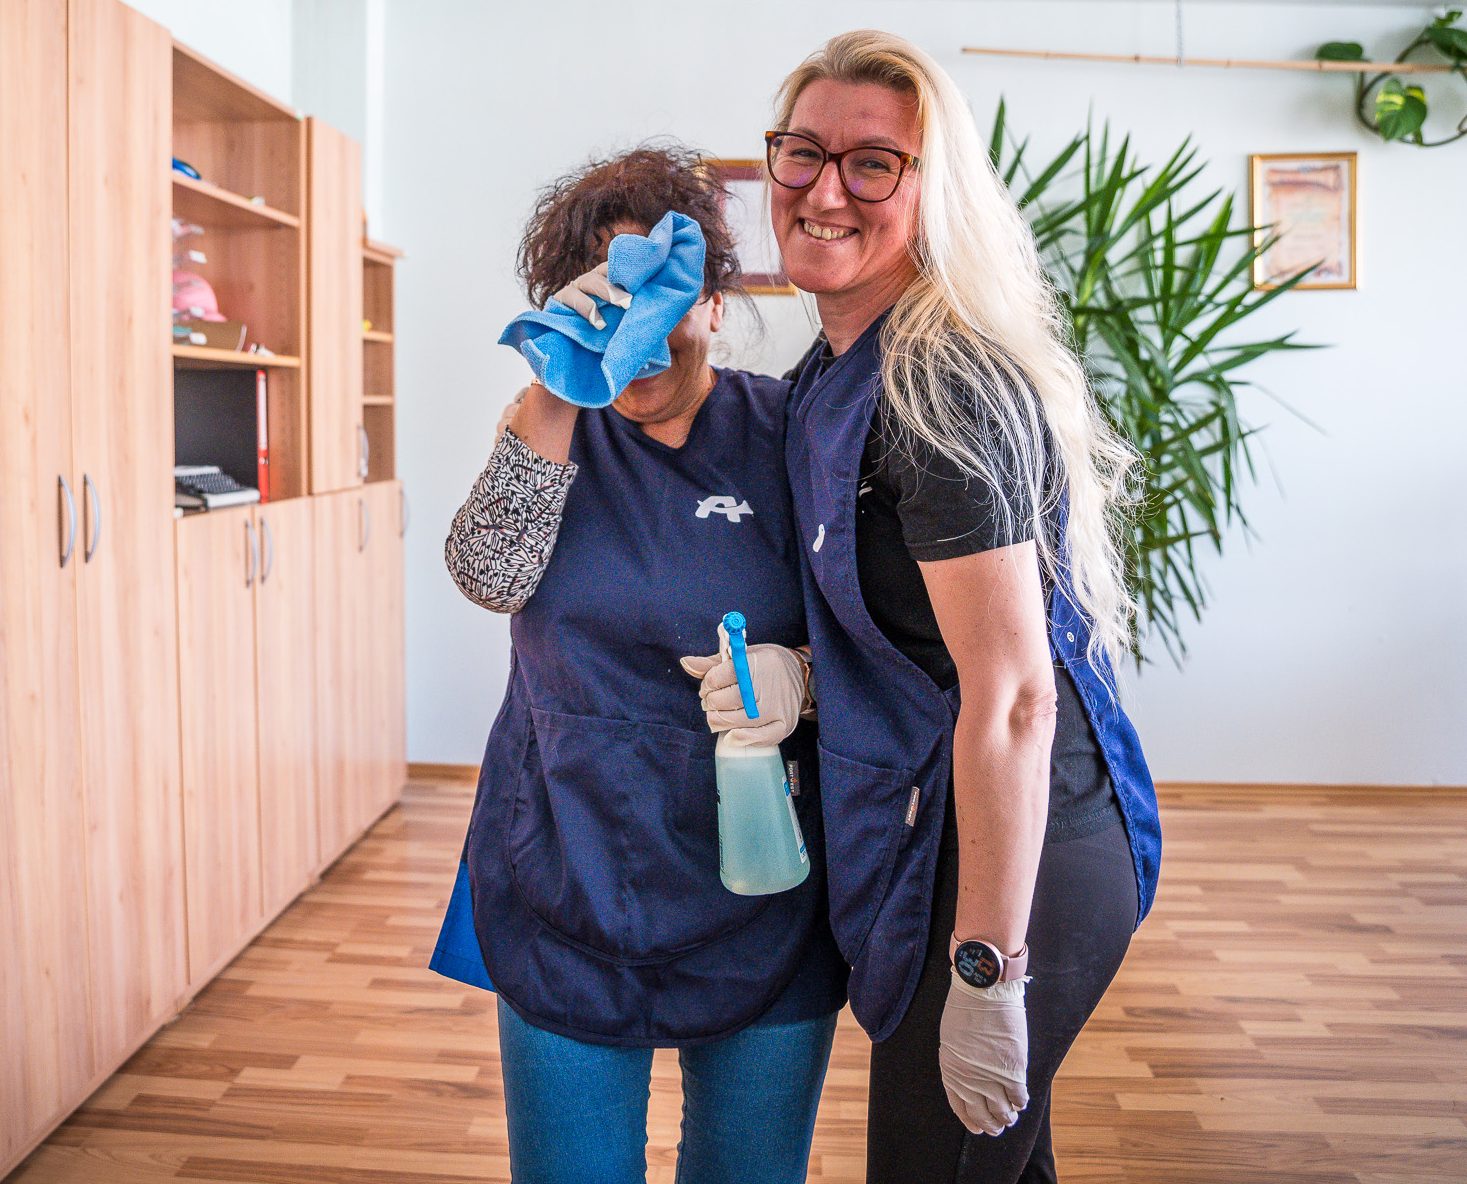 Dve nasmejani sodelavki v modrih uniformah čistilnega servisa izvajata čiščenje pisarne.